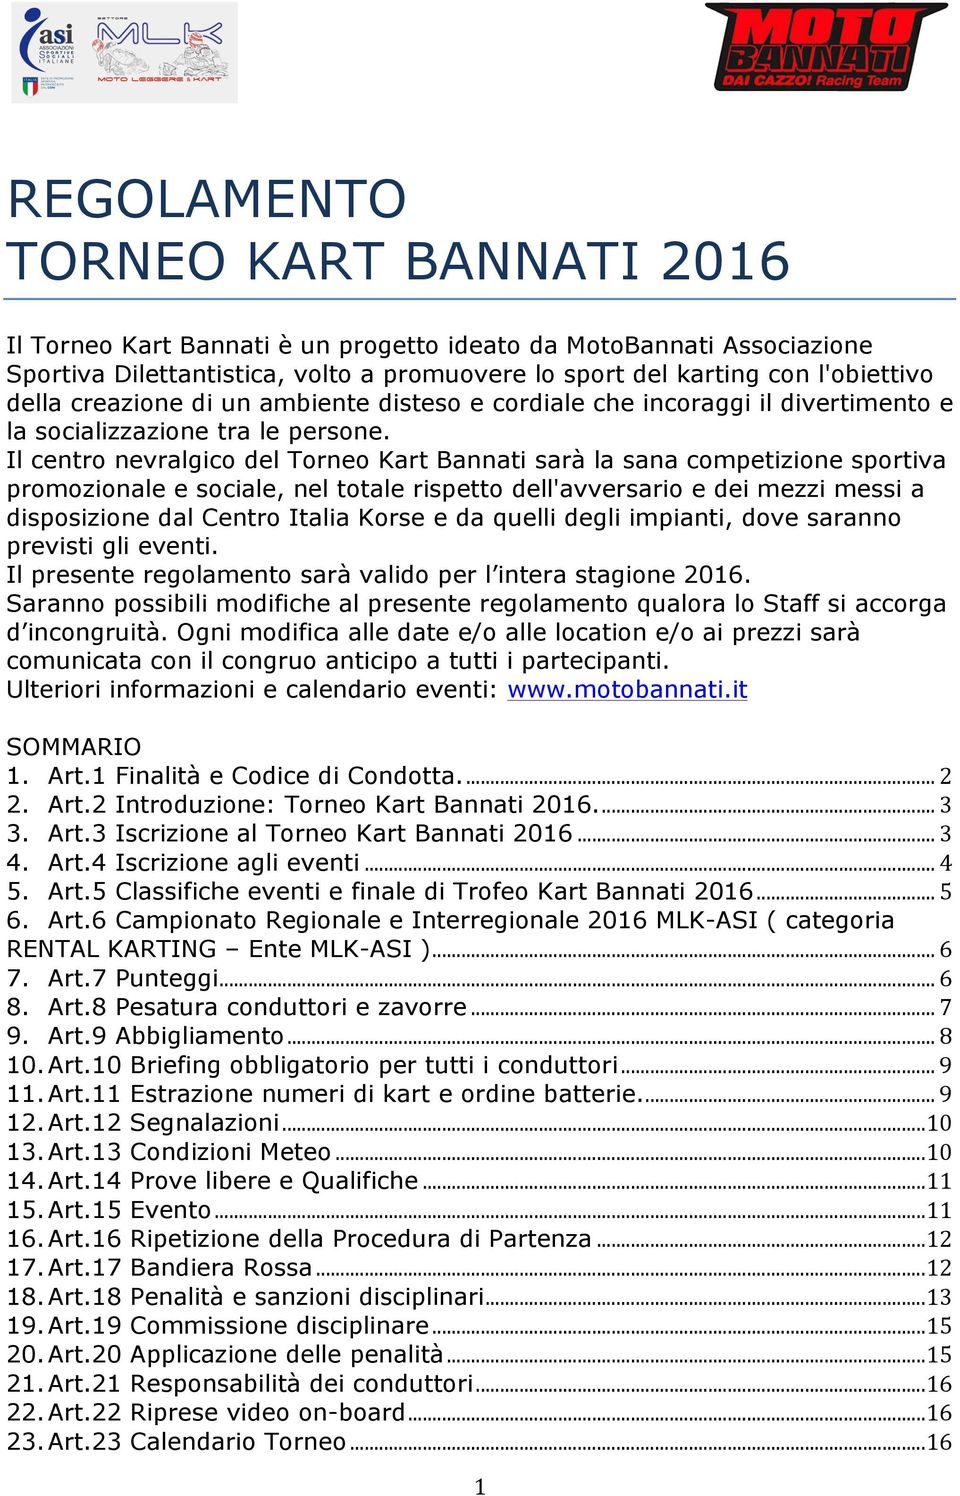 Il centro nevralgico del Torneo Kart Bannati sarà la sana competizione sportiva promozionale e sociale, nel totale rispetto dell'avversario e dei mezzi messi a disposizione dal Centro Italia Korse e